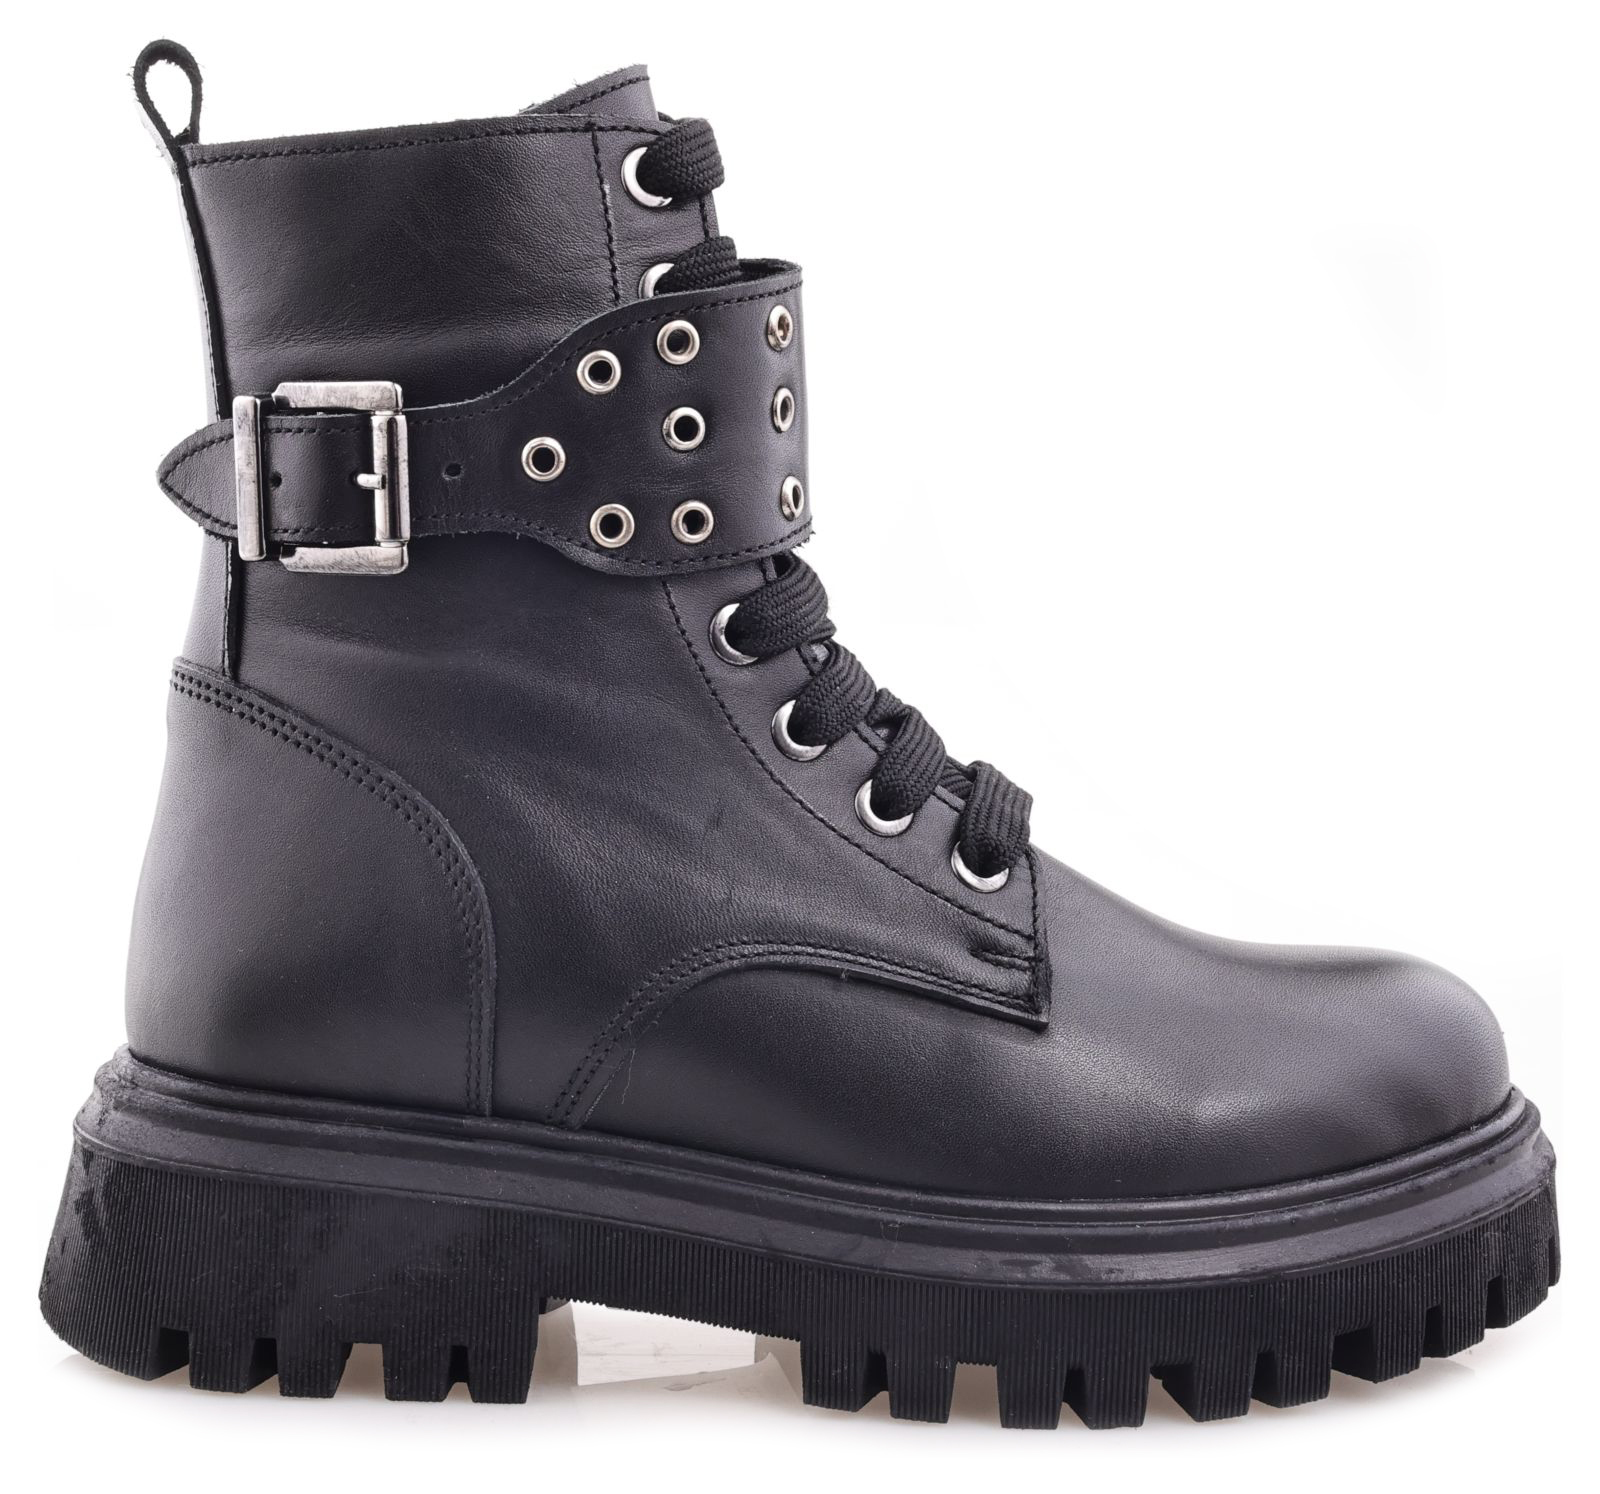 Ботинки Minimen для девочек, чёрные, размер 34, 2666-44-23B-02 2666 боланьо р